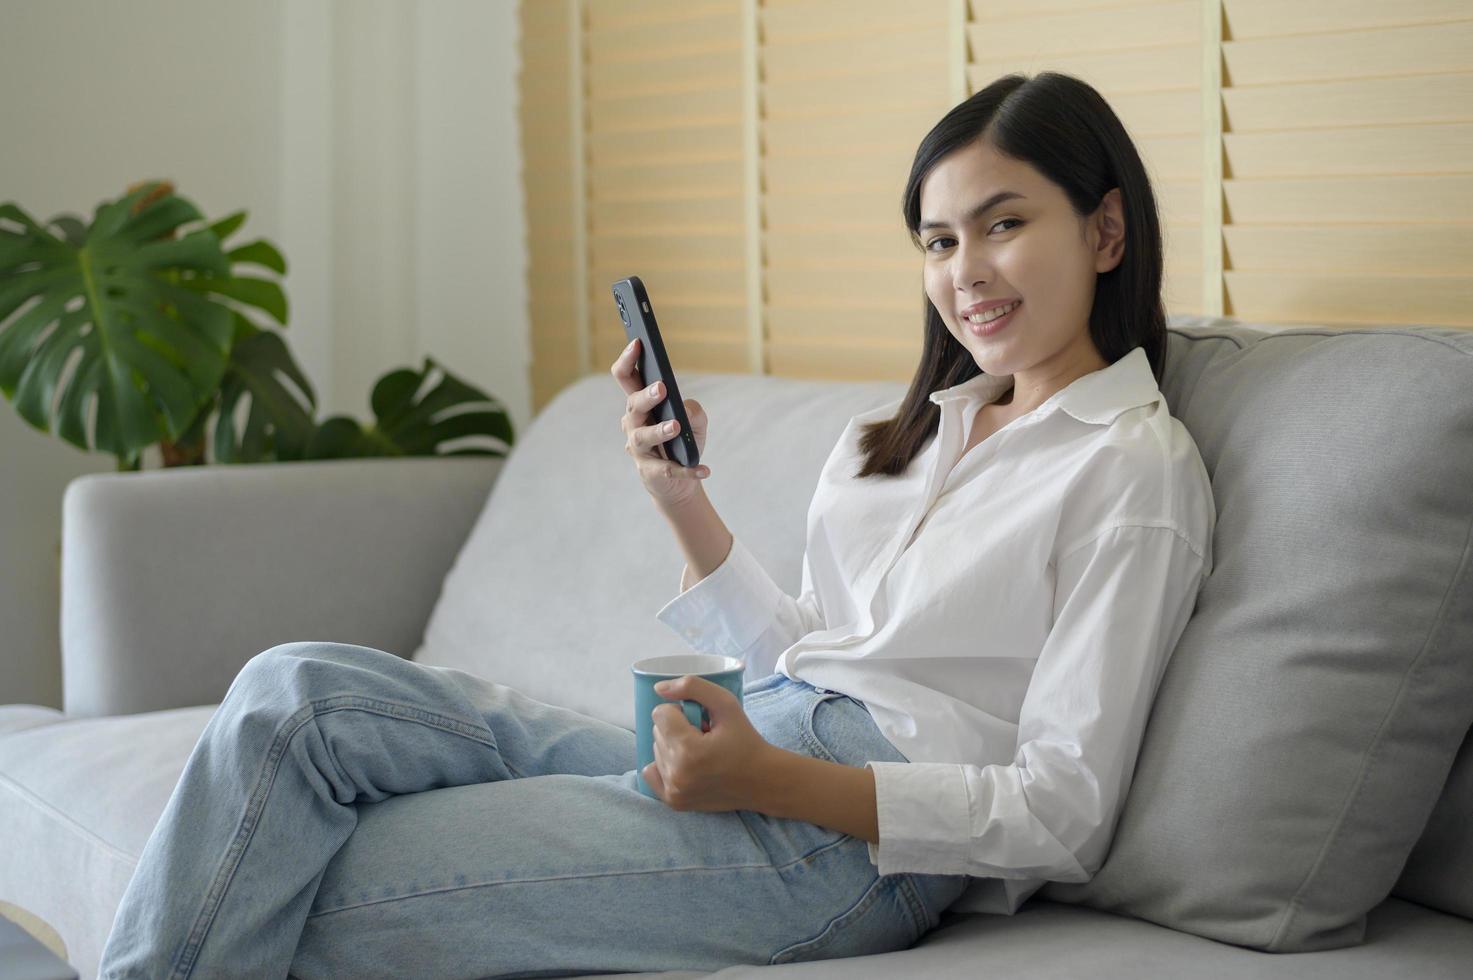 joven mujer feliz relajándose y usando un teléfono inteligente en casa, las redes sociales y el concepto de tecnología. foto